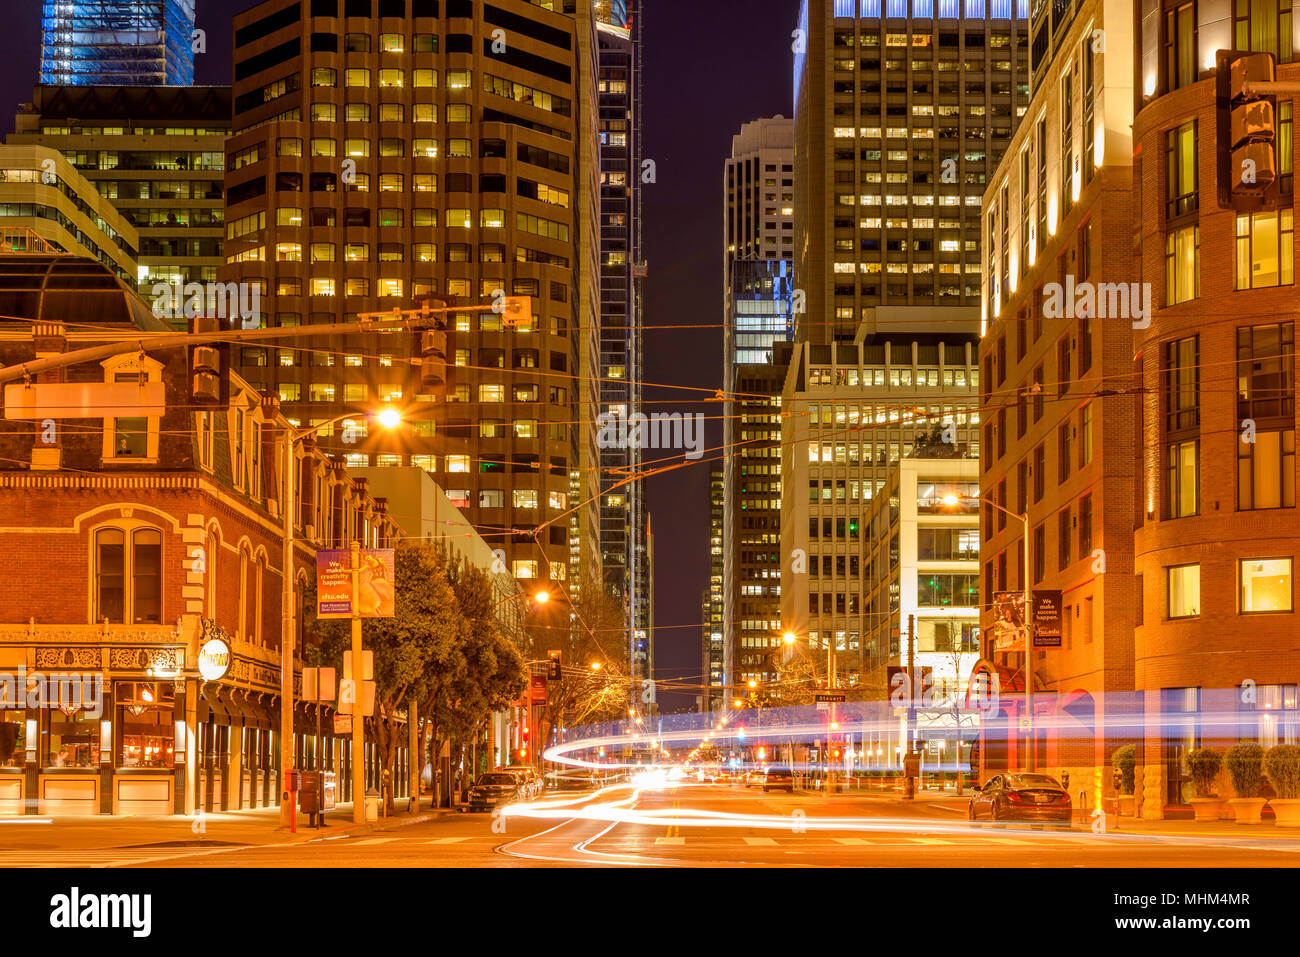 Nacht City Street - eine Nacht street view eines grossen Kreuzung im Financial District von San Francisco, Kalifornien, USA. Stockfoto